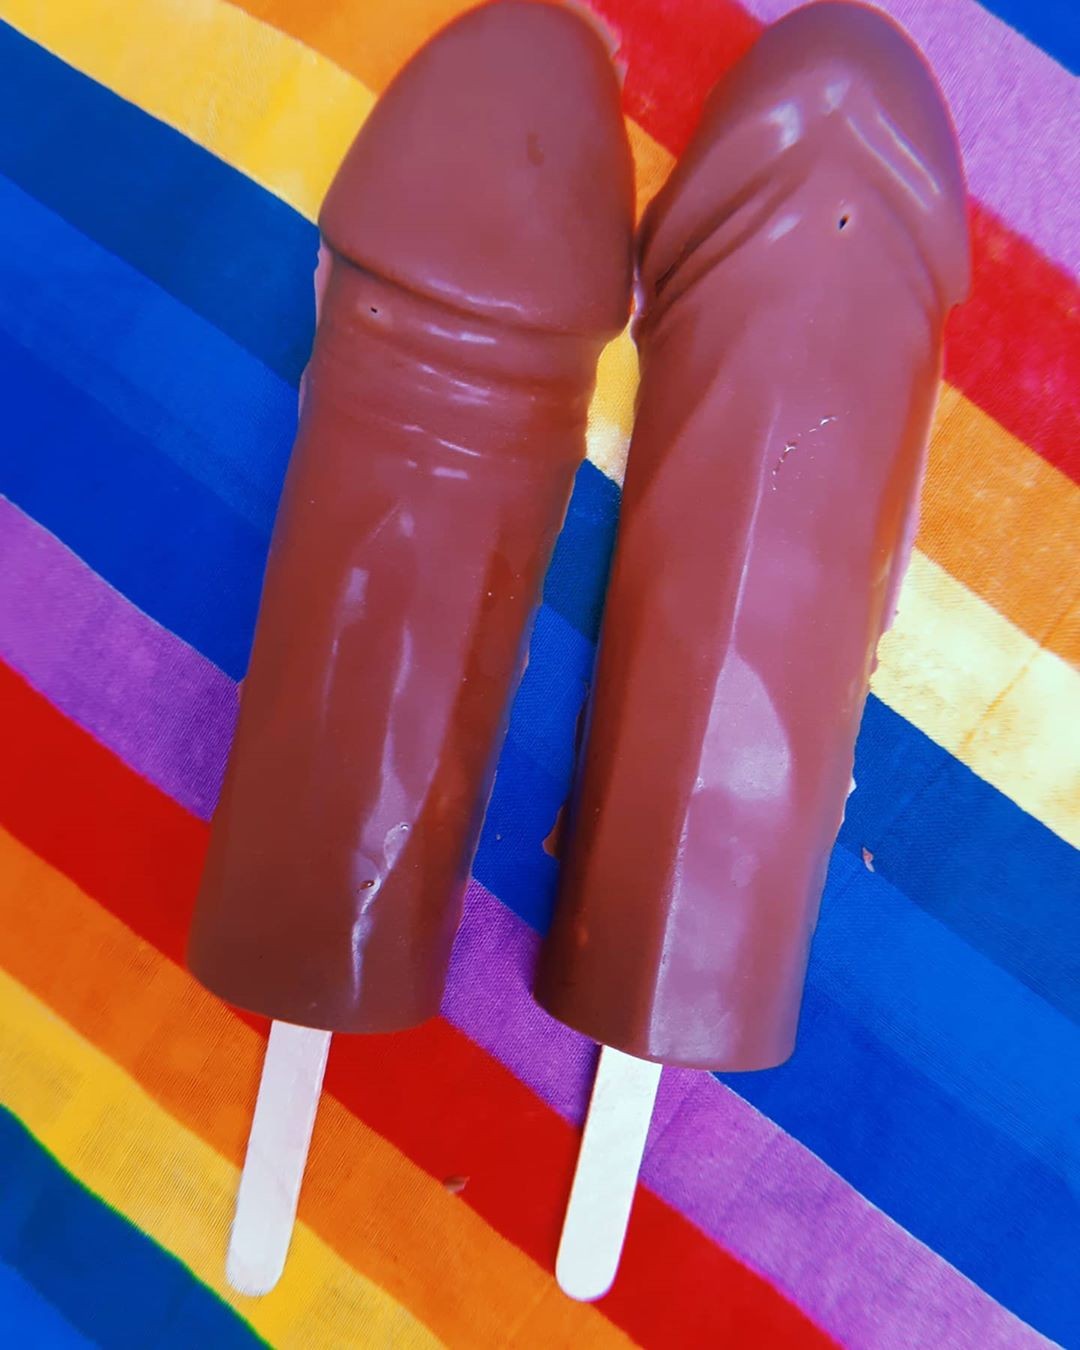 Picolés em formato de pênis serão vendidos no carnaval de Olinda (Foto: Reprodução / Instagram)